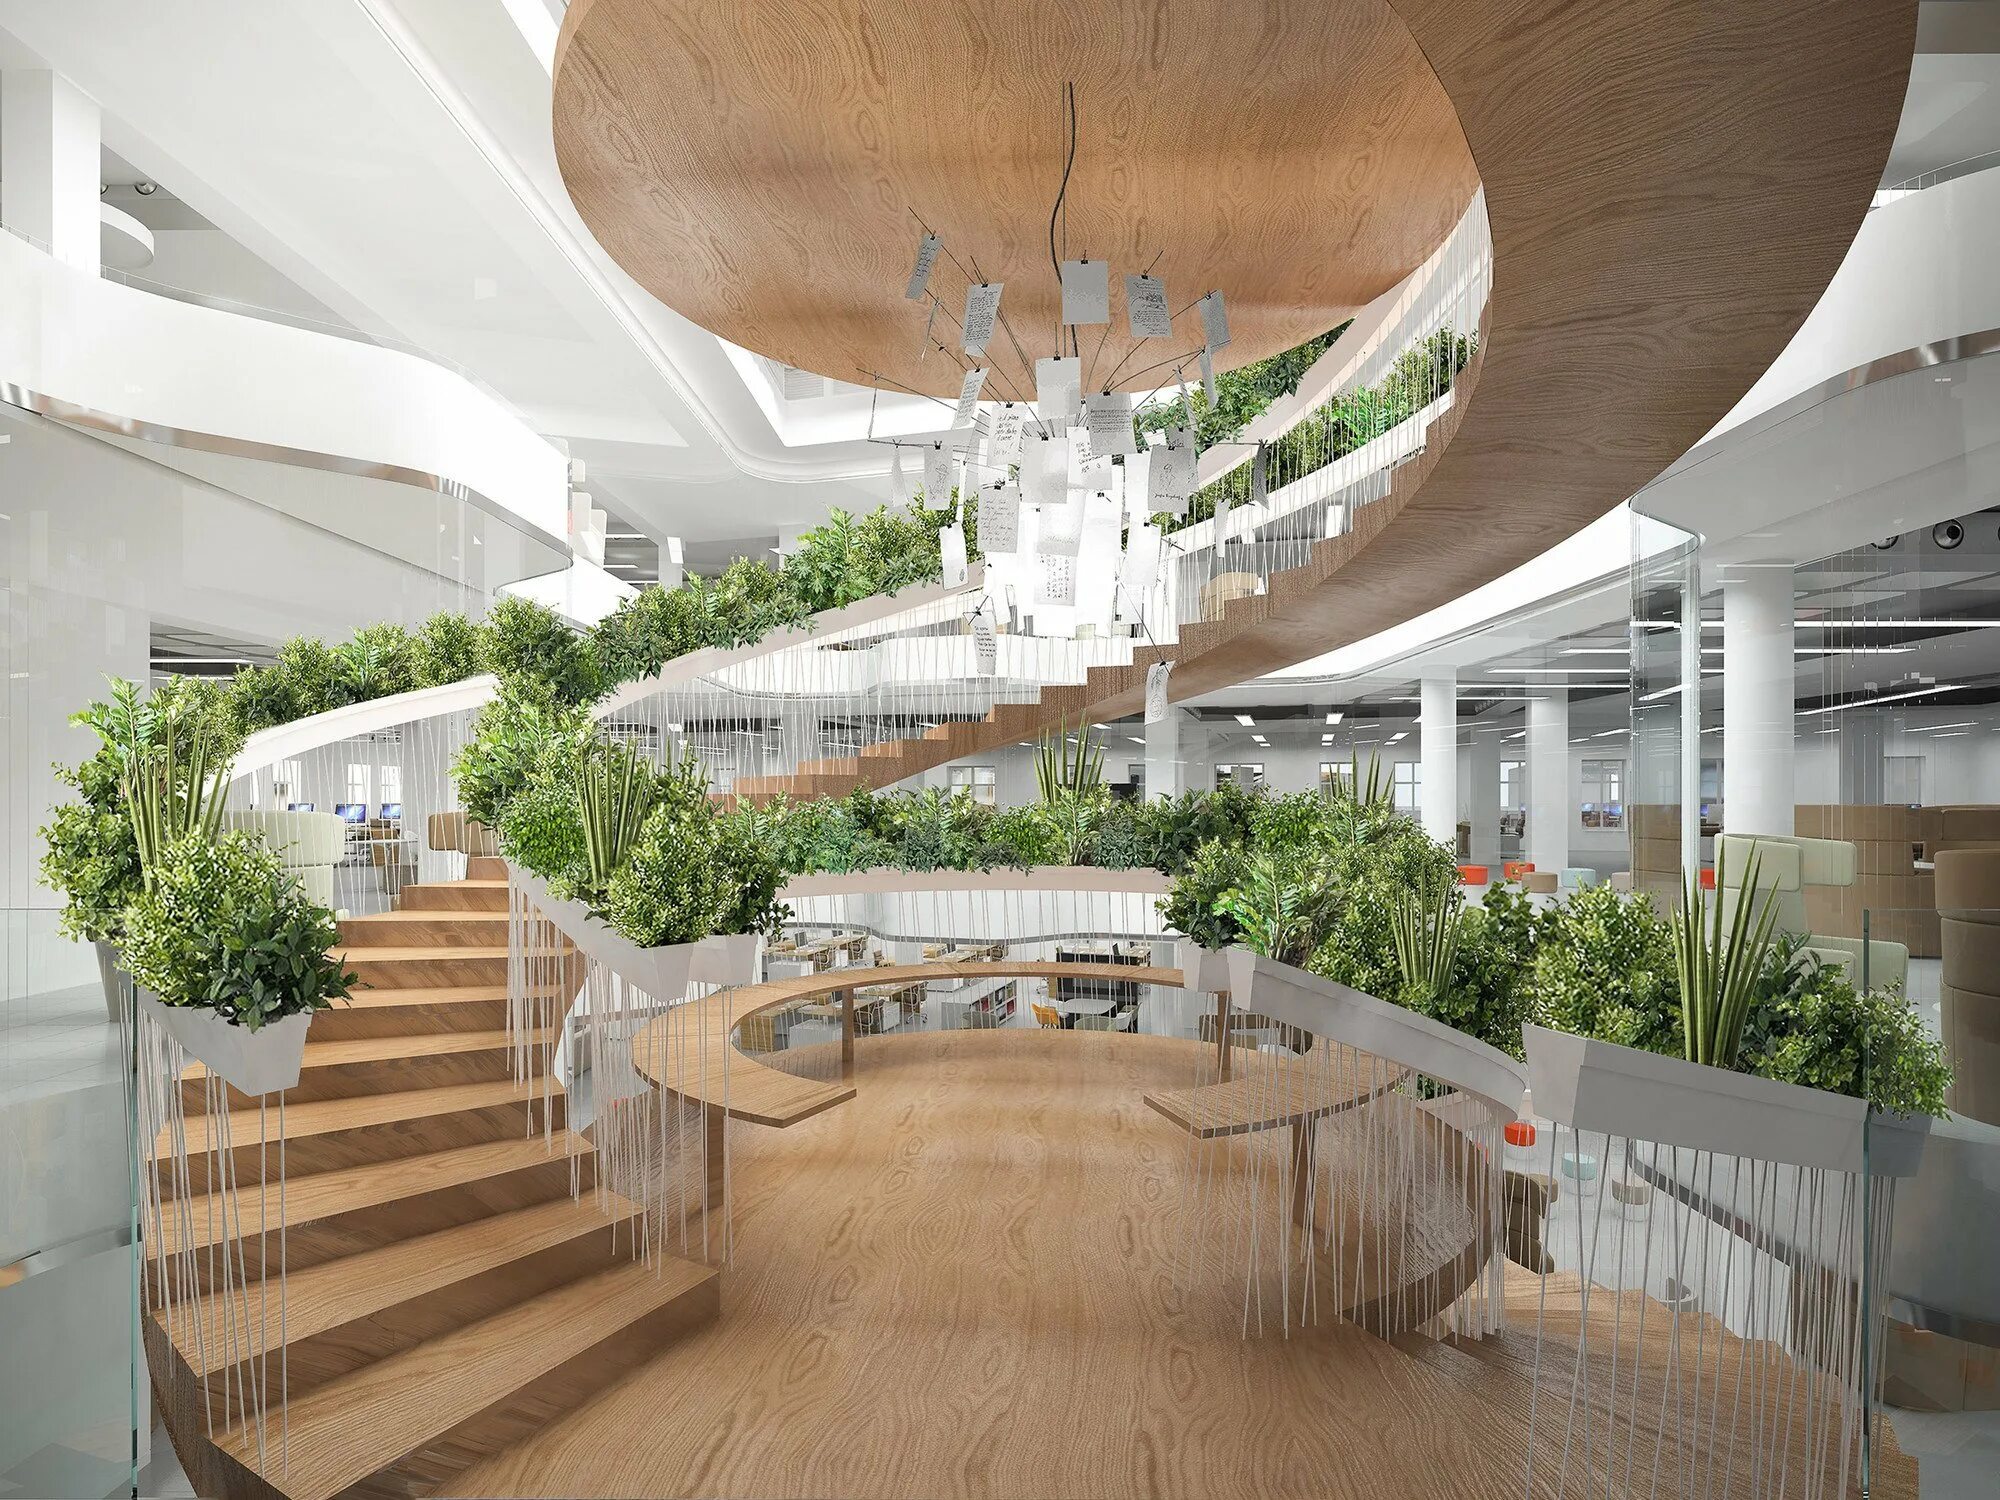 Лестницы Atrium Атриум. Парк Роял Сингапур архитектура. Greenery Озеленение интерьера. Экостиль в архитектуре общественных зданий. Е хол